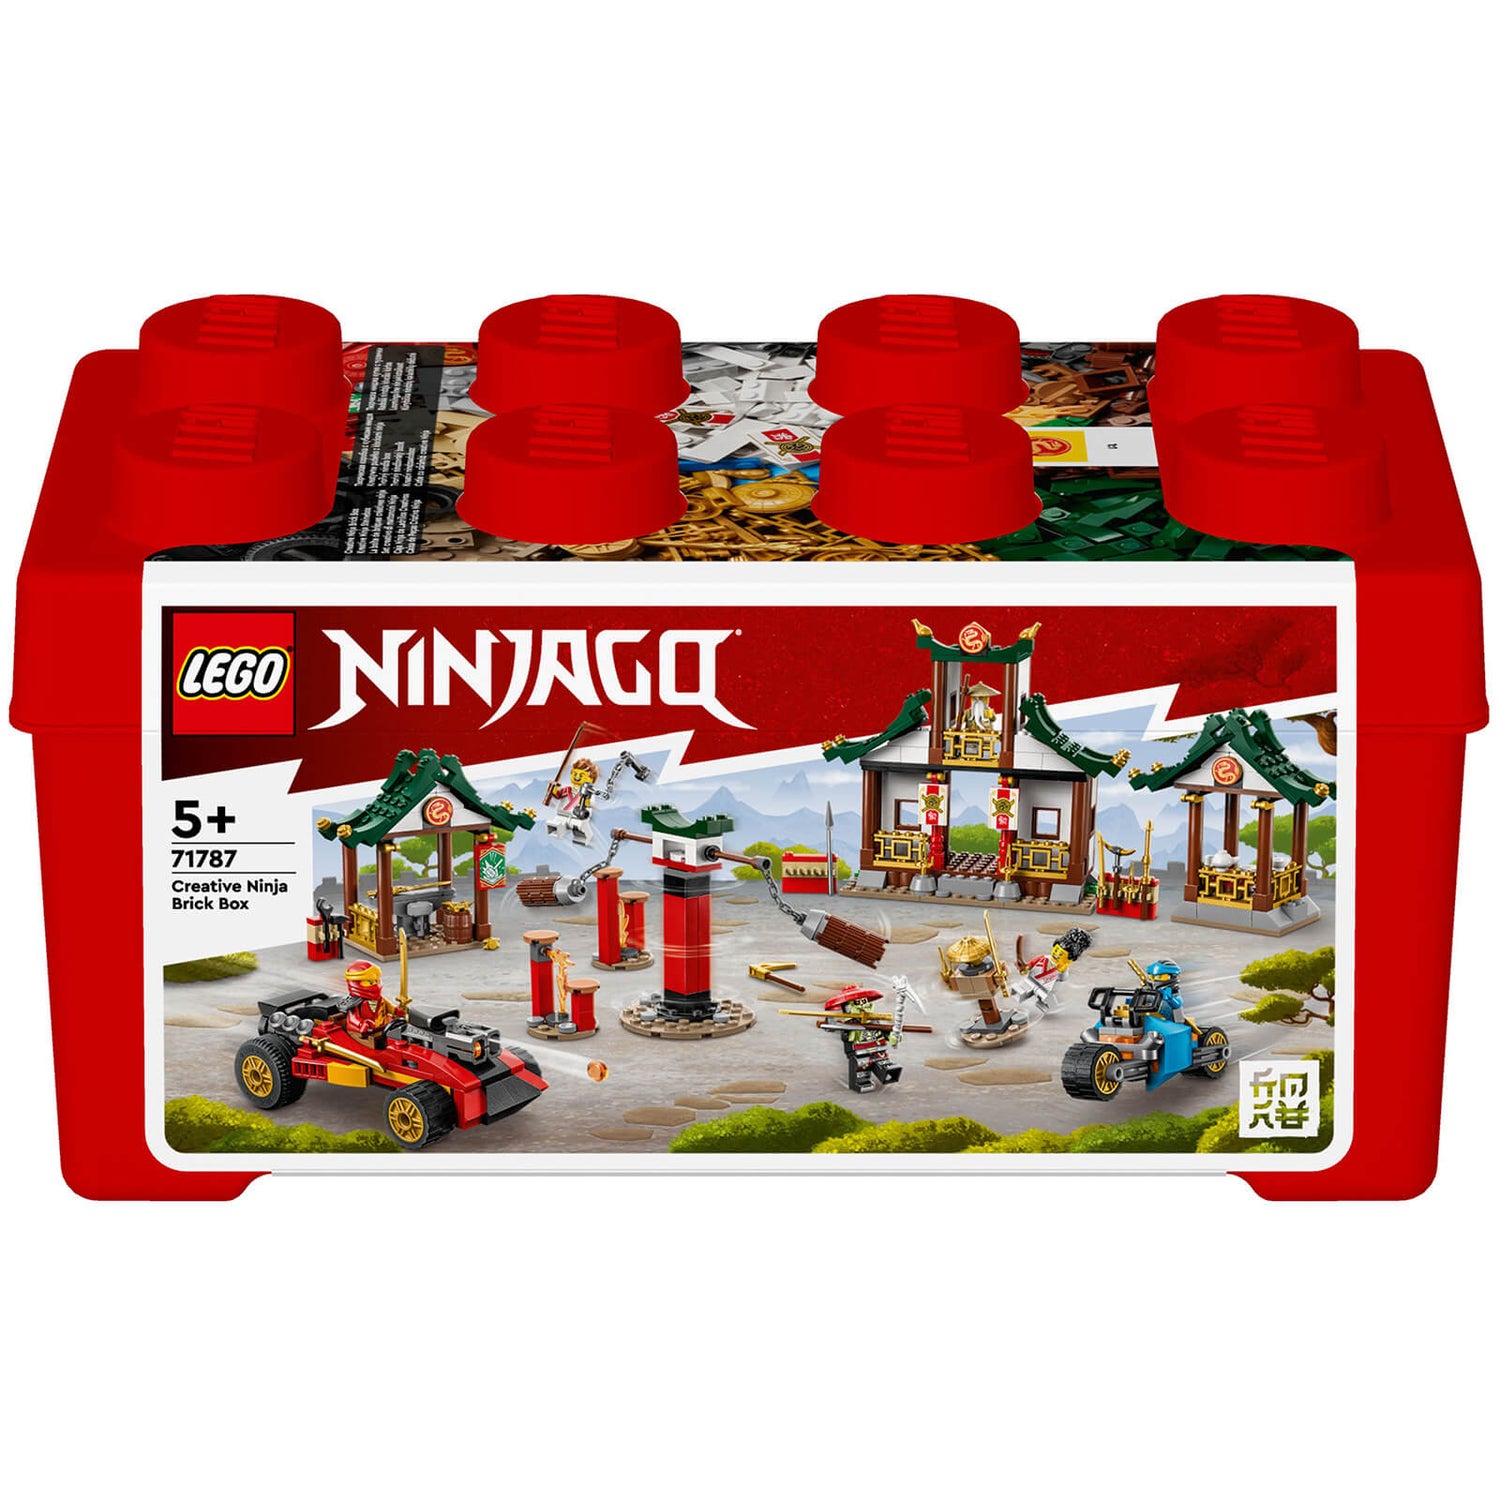 LEGO NINJAGO: Creative Ninja Brick Box Construction Set (71787)